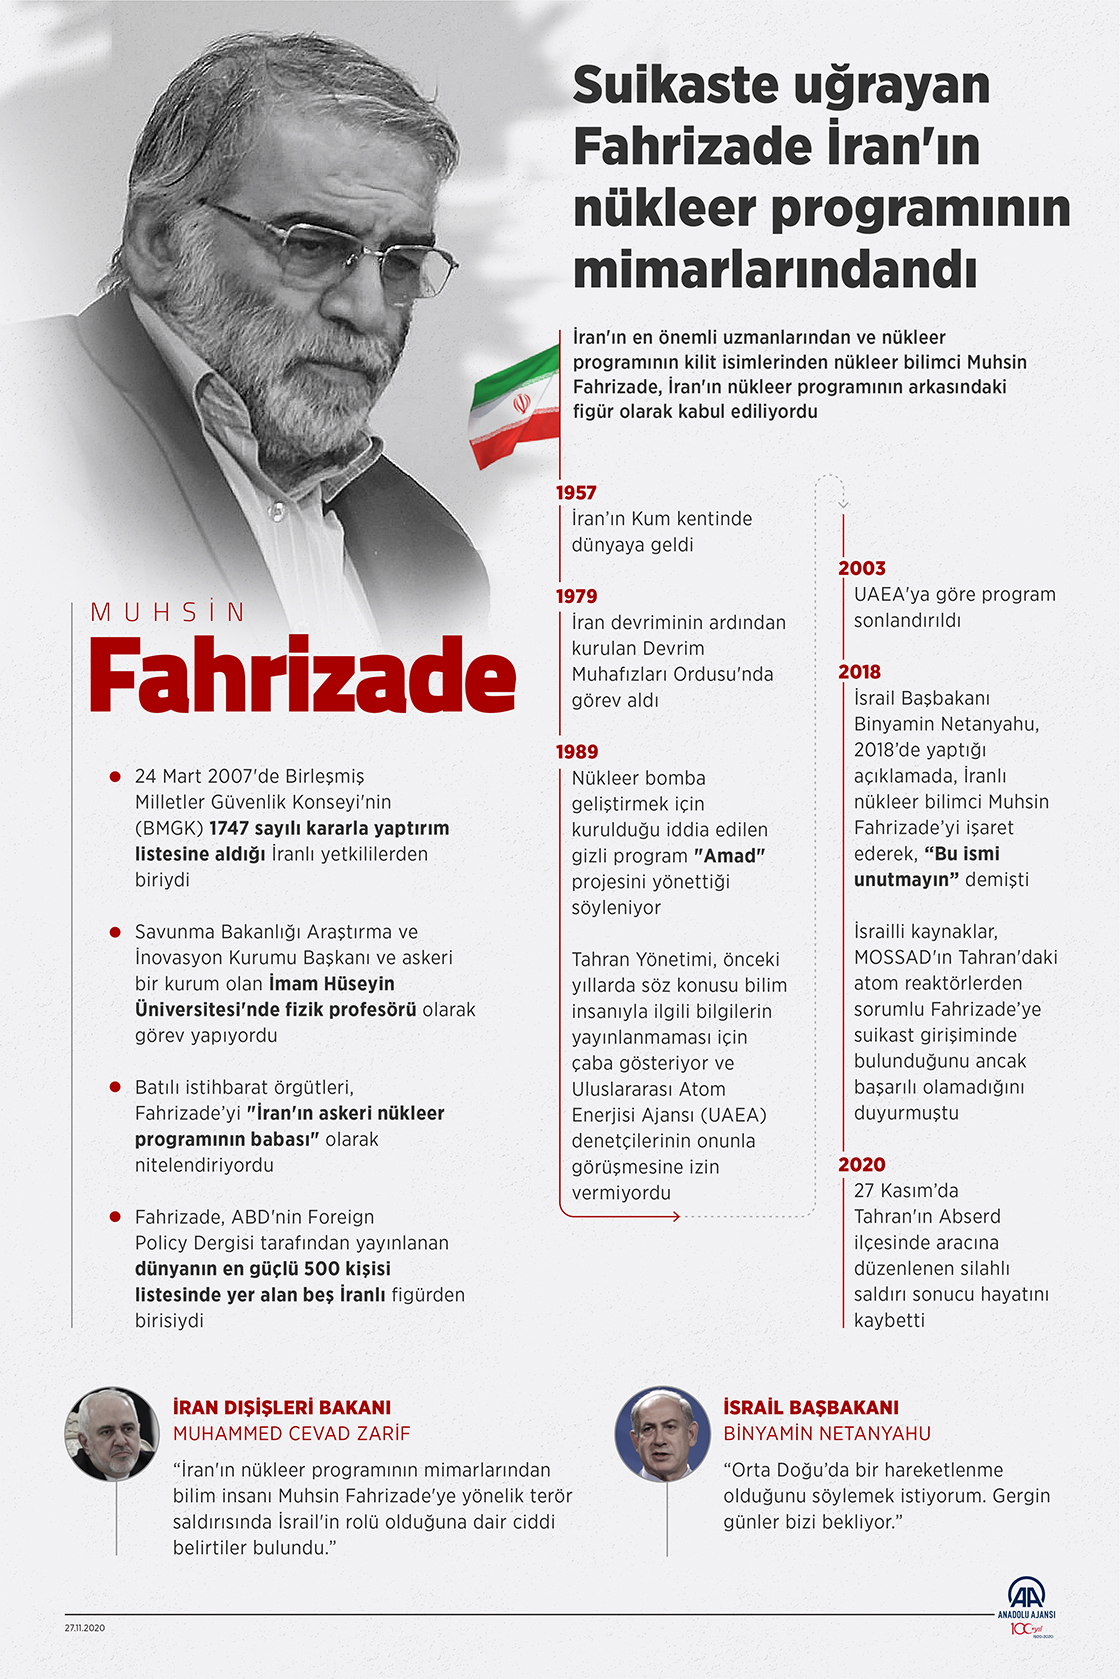 Suikaste uğrayan Fahrizade, İran'ın nükleer programının mimarlarındandı